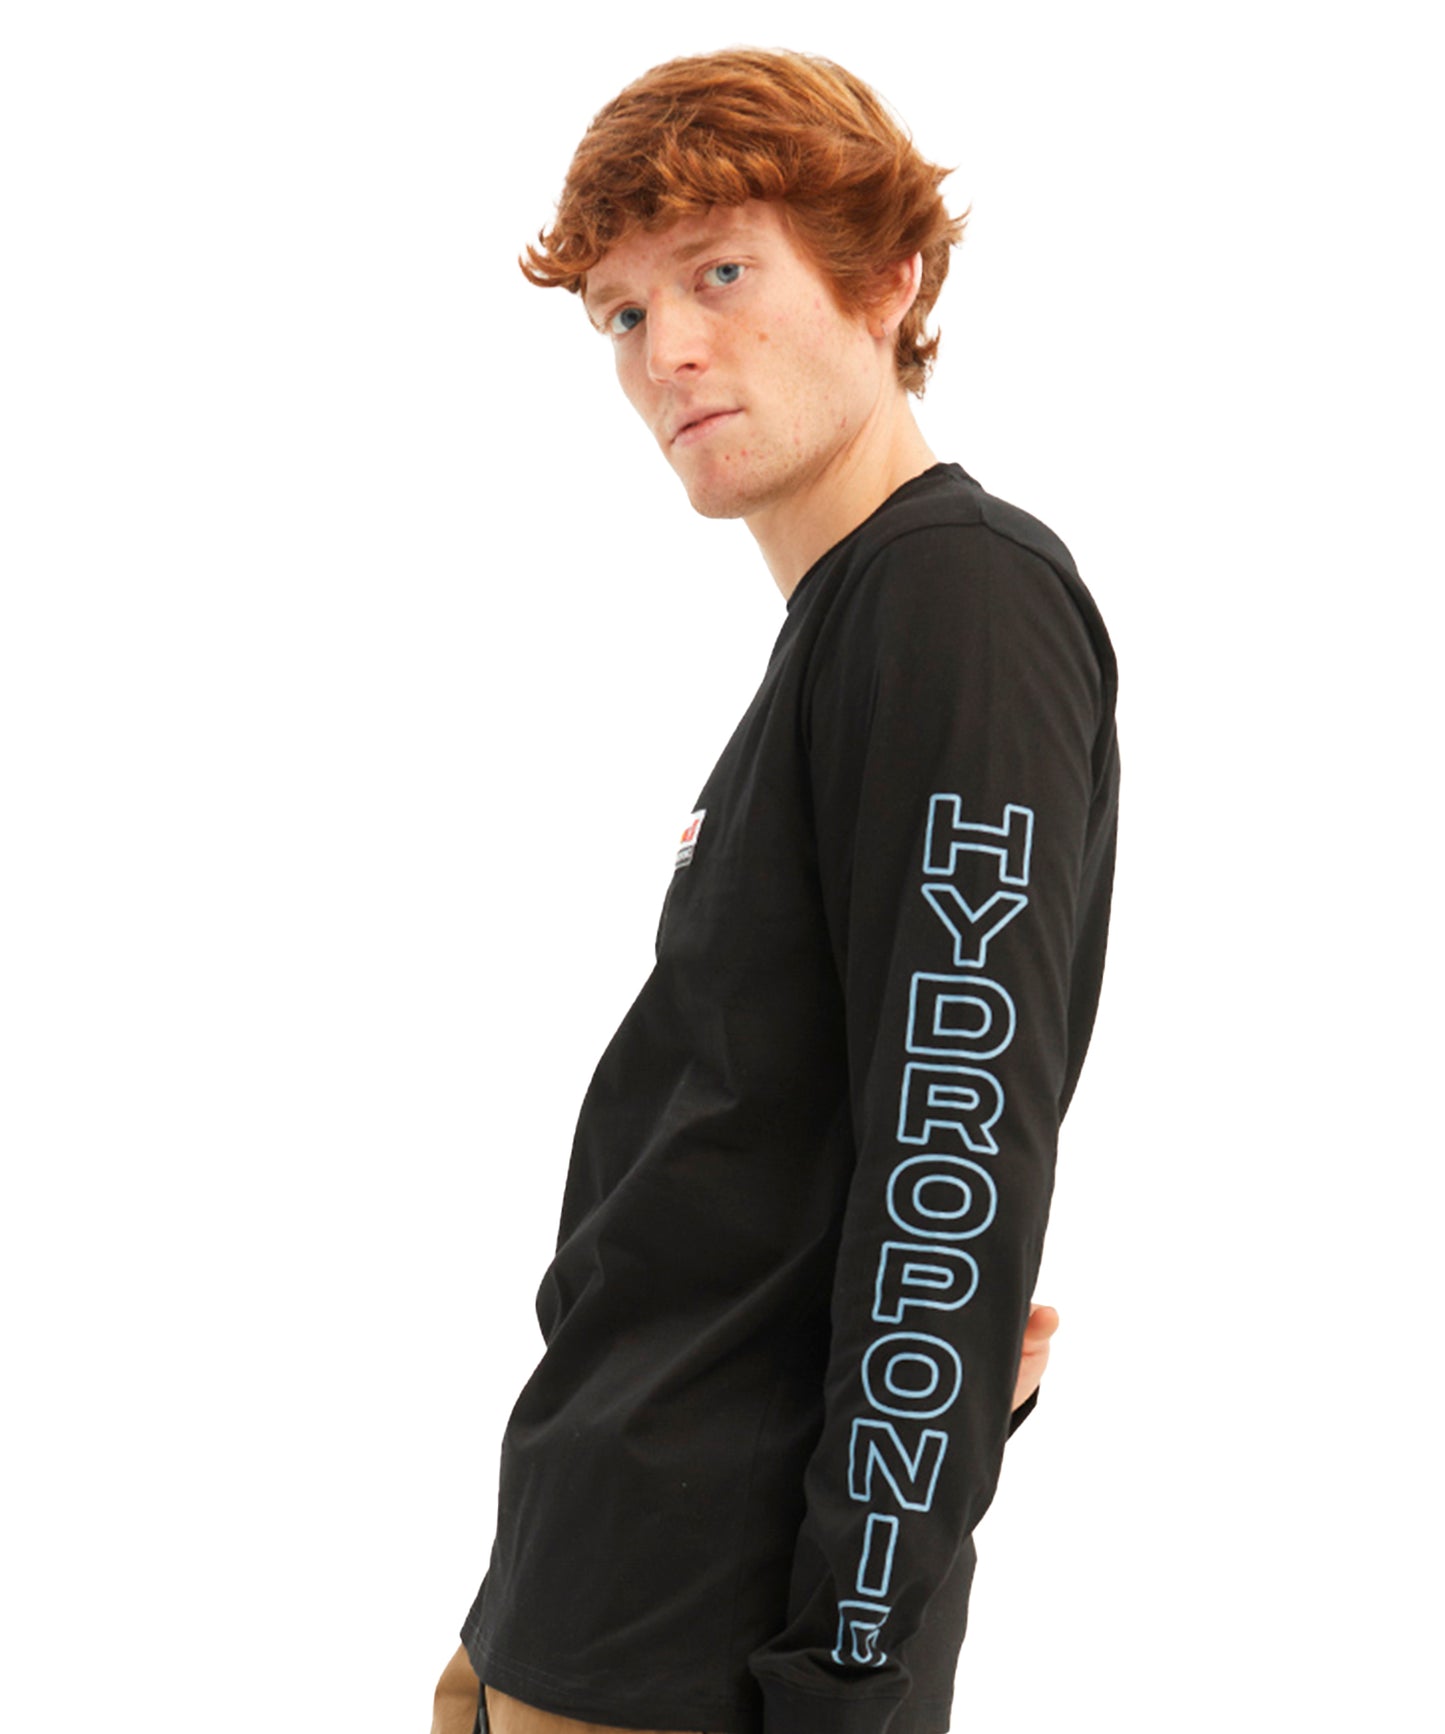 hydroponic-camiseta-de-manga-larga-dragon-ball-z-saiyan-3-color-negro-algodón-100%-logo-pequeño-en-el-bolsillo-y-estampado-en-la-espalda-y-mangas